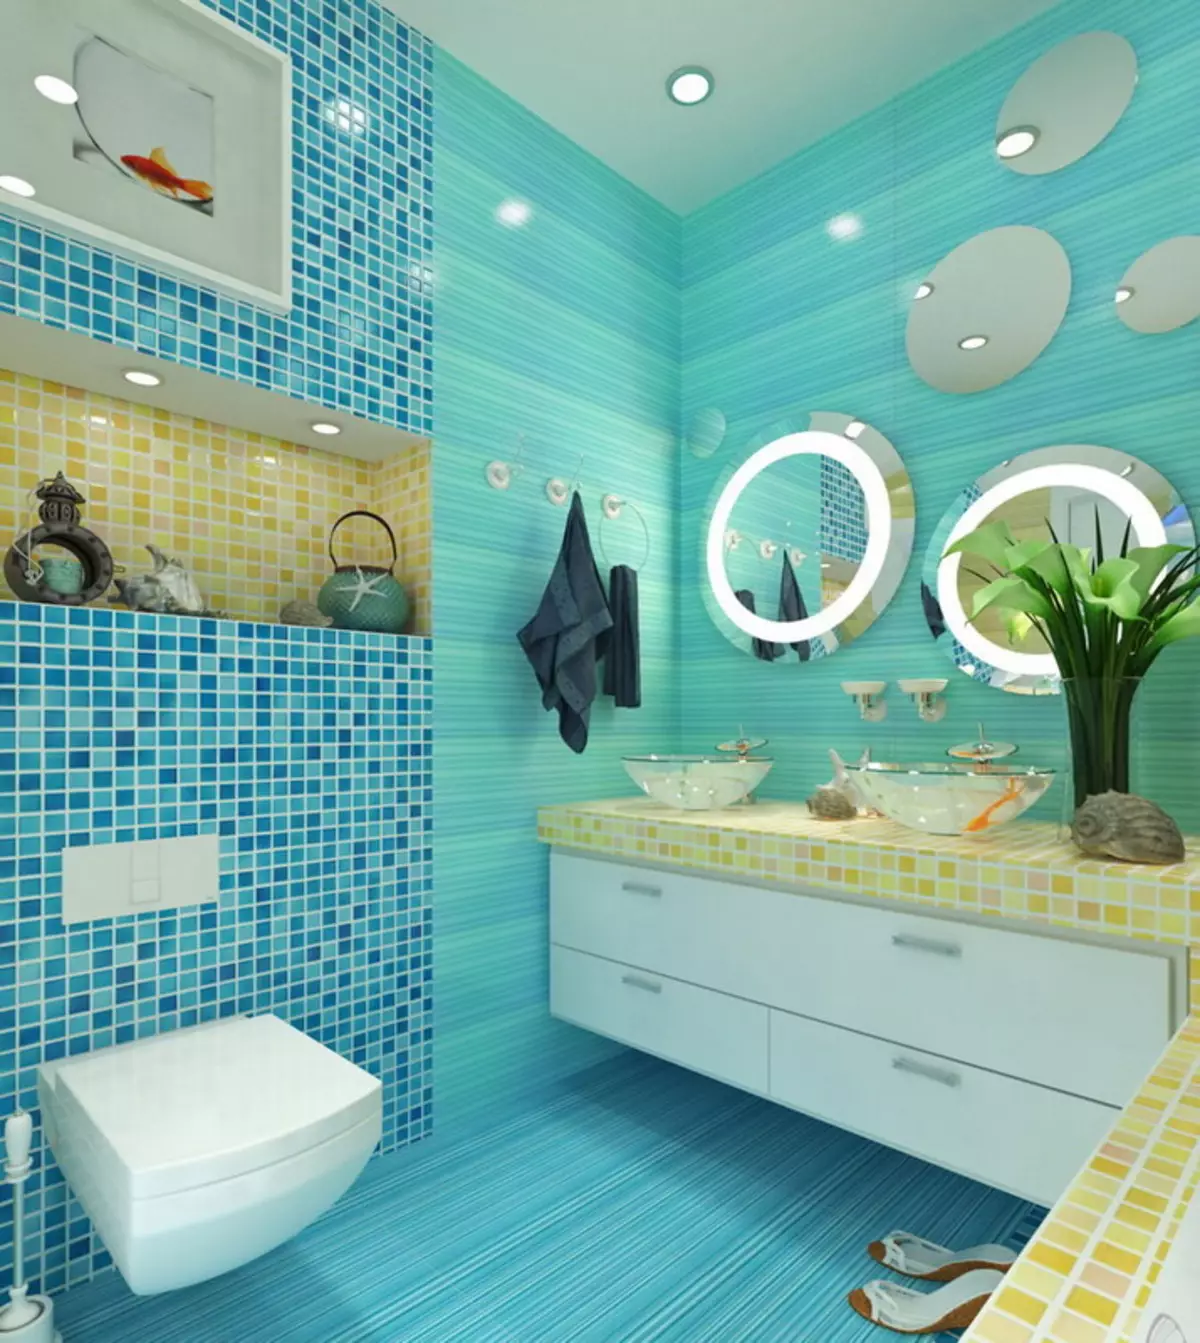 Baño turquesa (61 fotos): Ejemplos de diseño de baño en este color. Entendemos en colores, creamos un hermoso interior. 10203_32